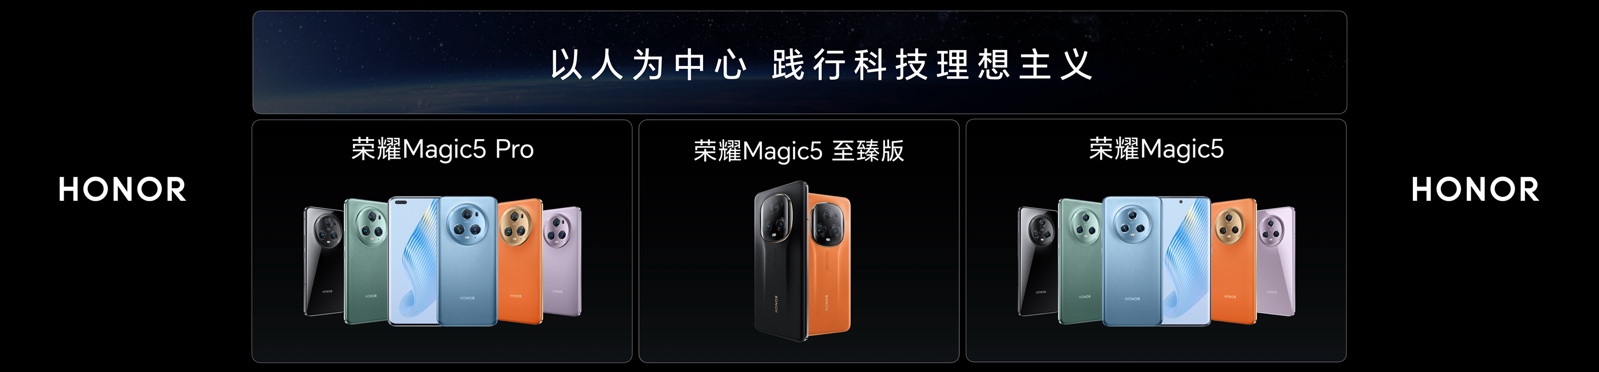 荣耀Magic5系列国内发布  多领域技术全面爆发